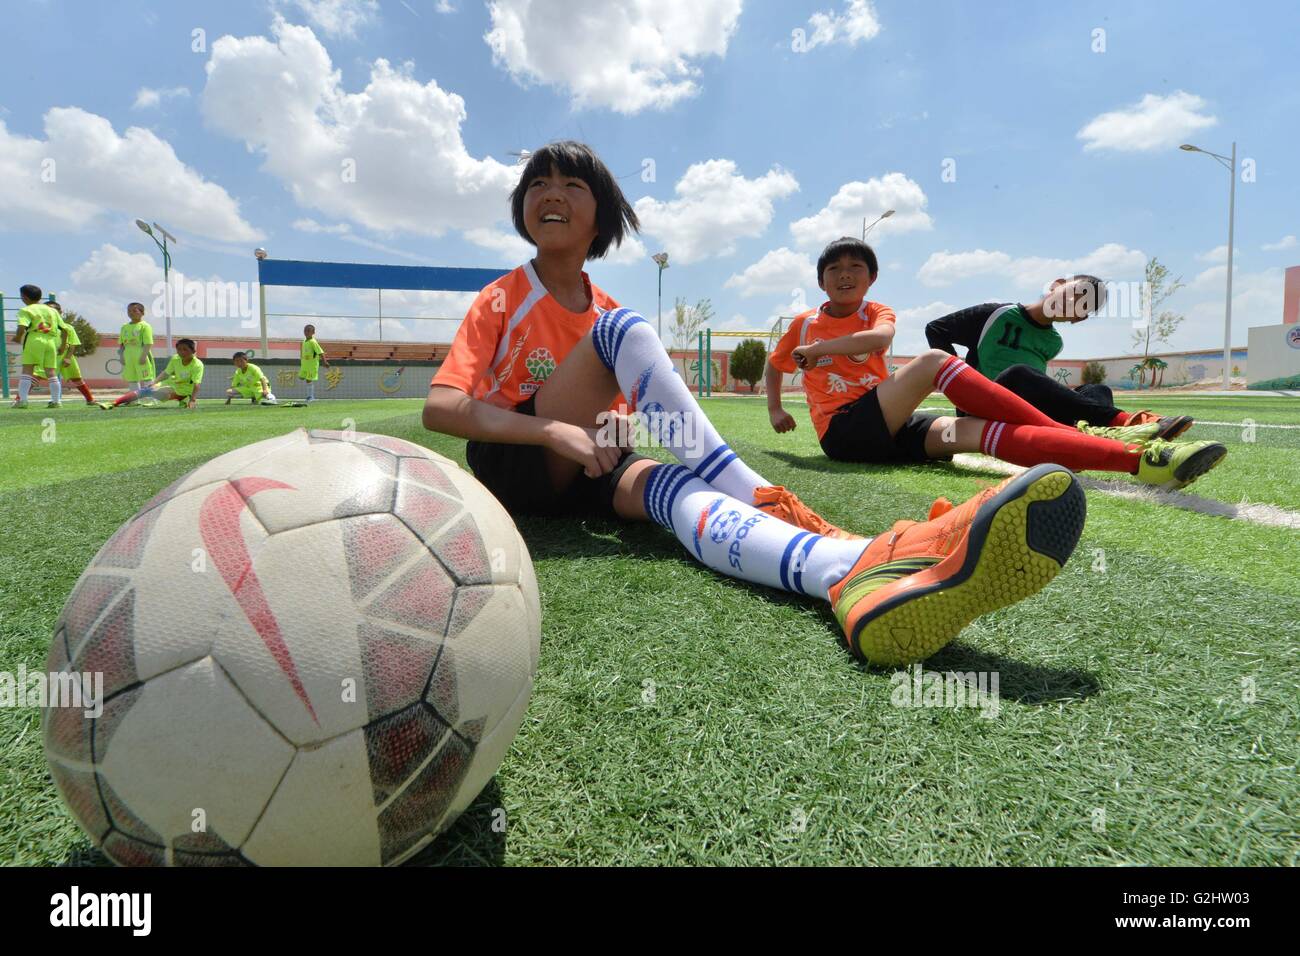 160601) - Lanzhou, 1 de junio de 2016 (Xinhua) -- las niñas del equipo se preparan para participar en un juego de americano en la Escuela Primaria Zhonglianchuan jugar